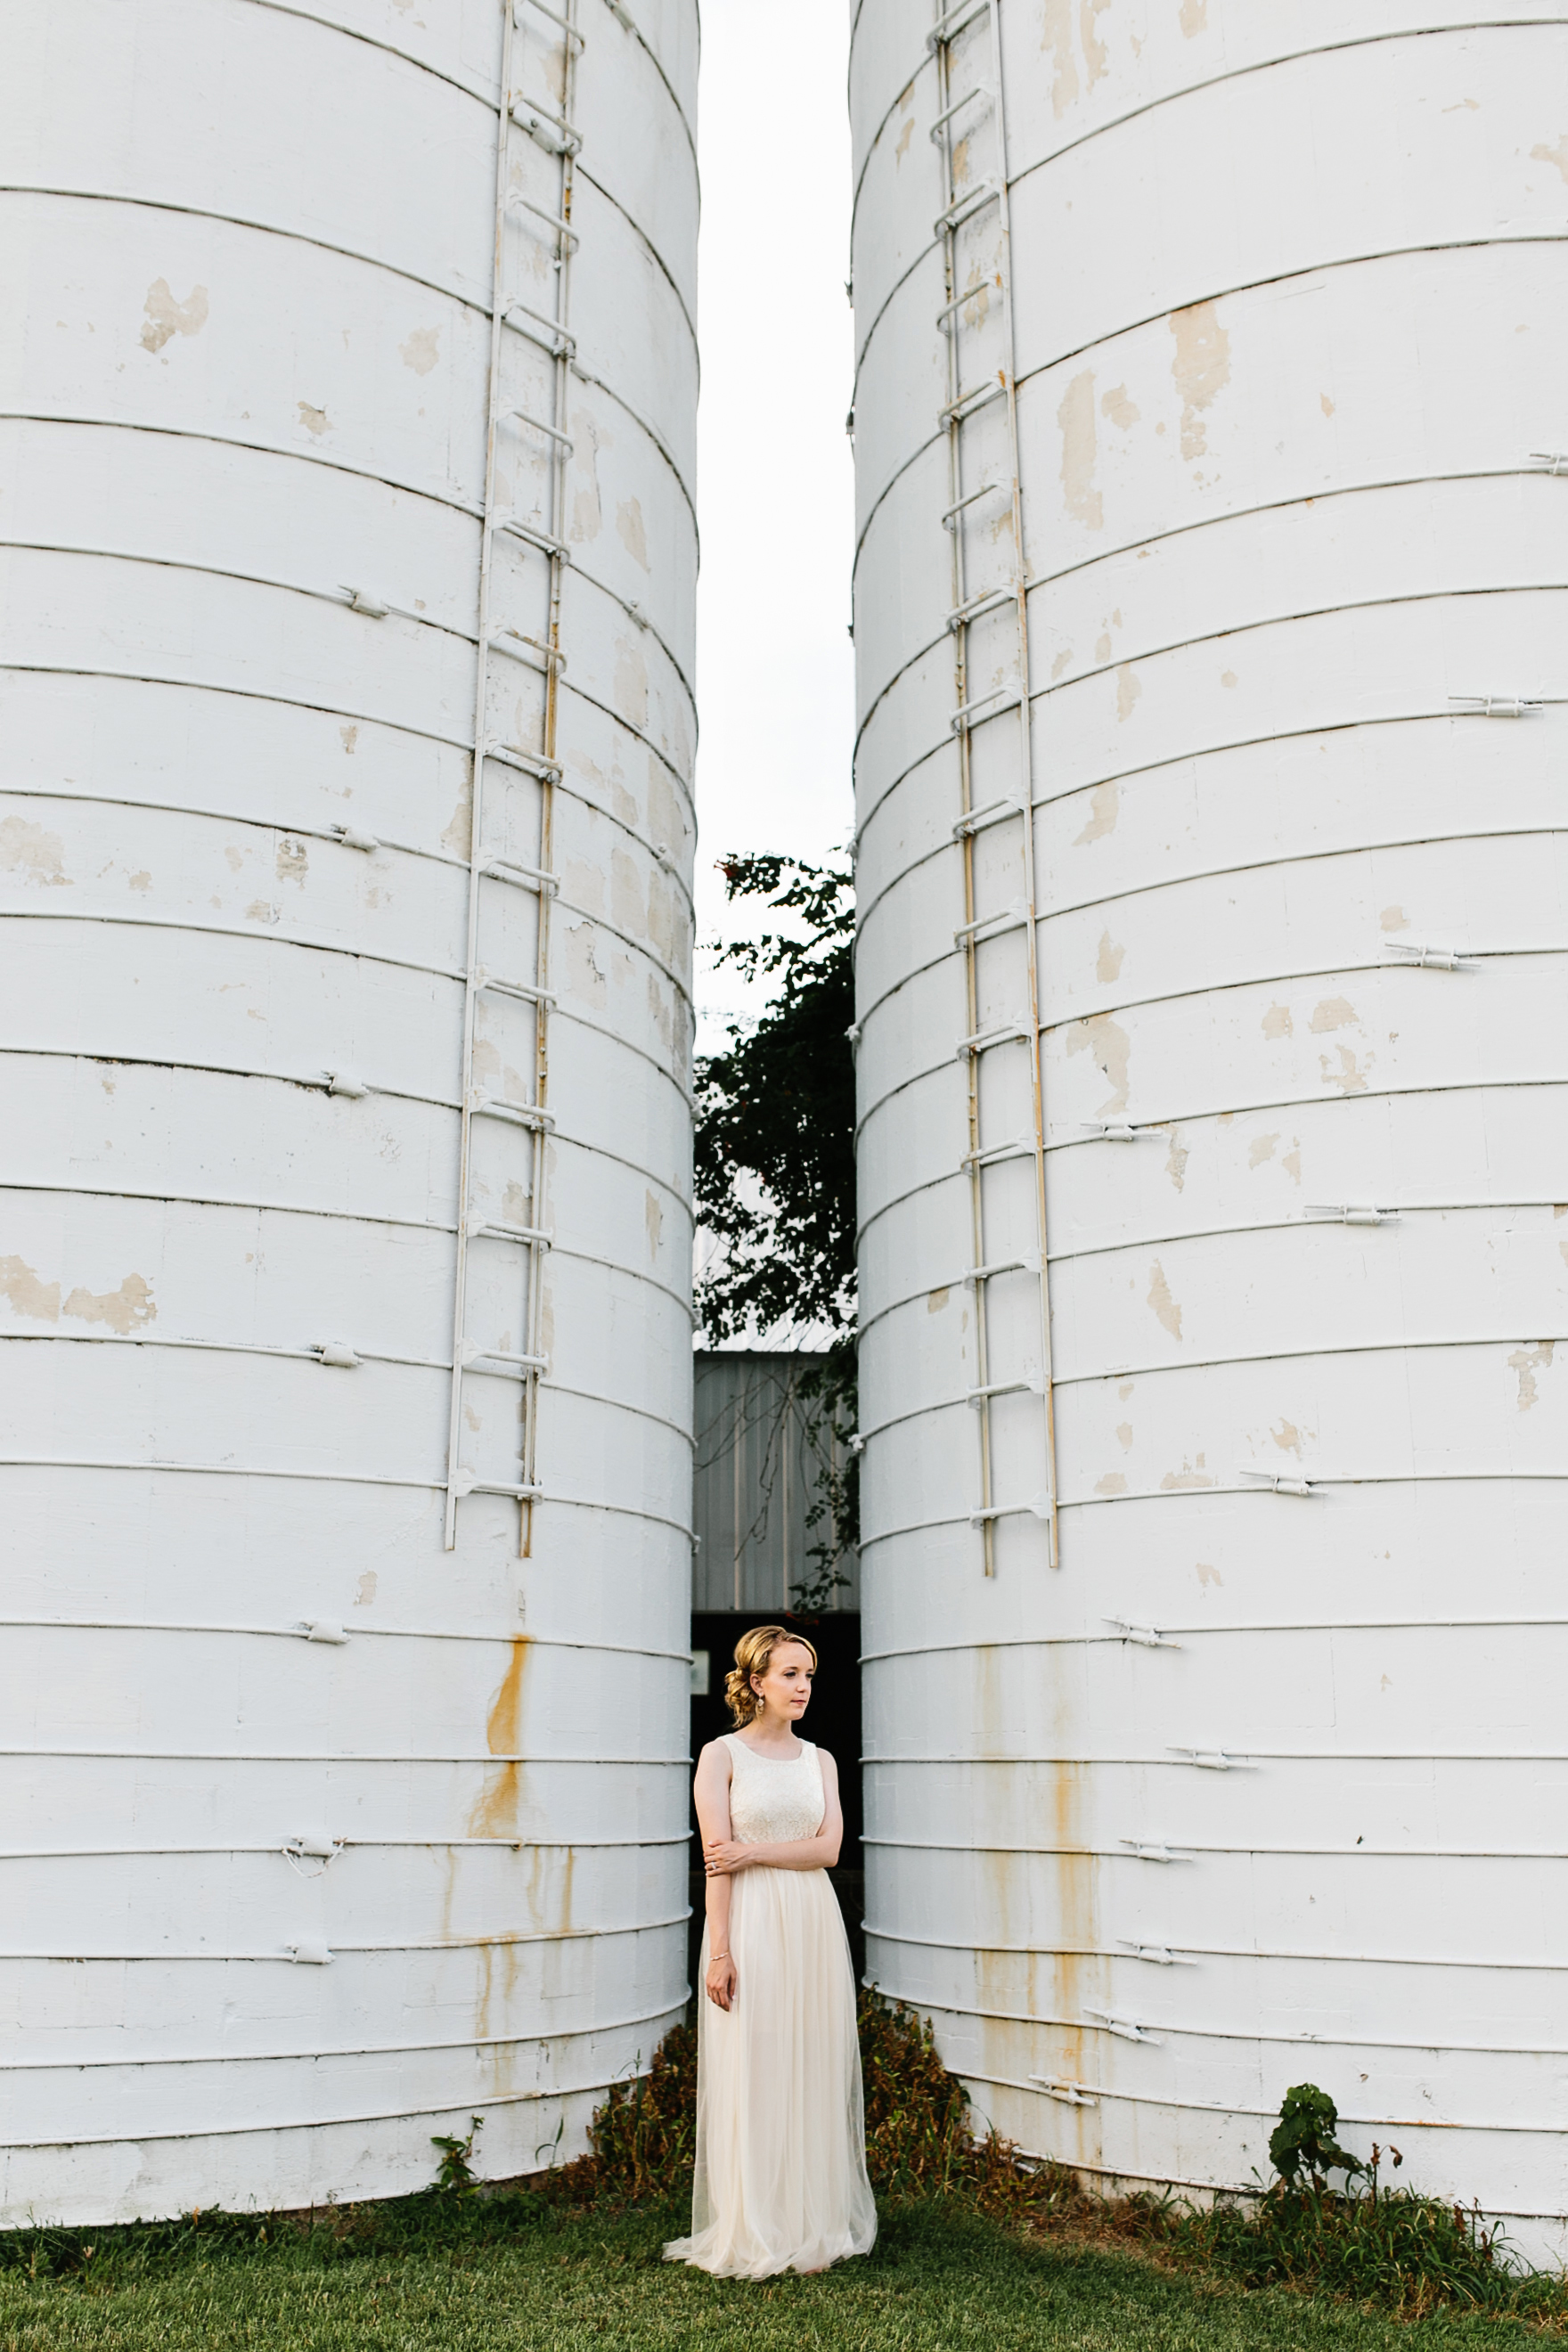 silo. wedding near a silo. farm wedding. vineyard wedding. winery wedding. creative wedding photos. unique wedding photos. Tennessee wedding photographe